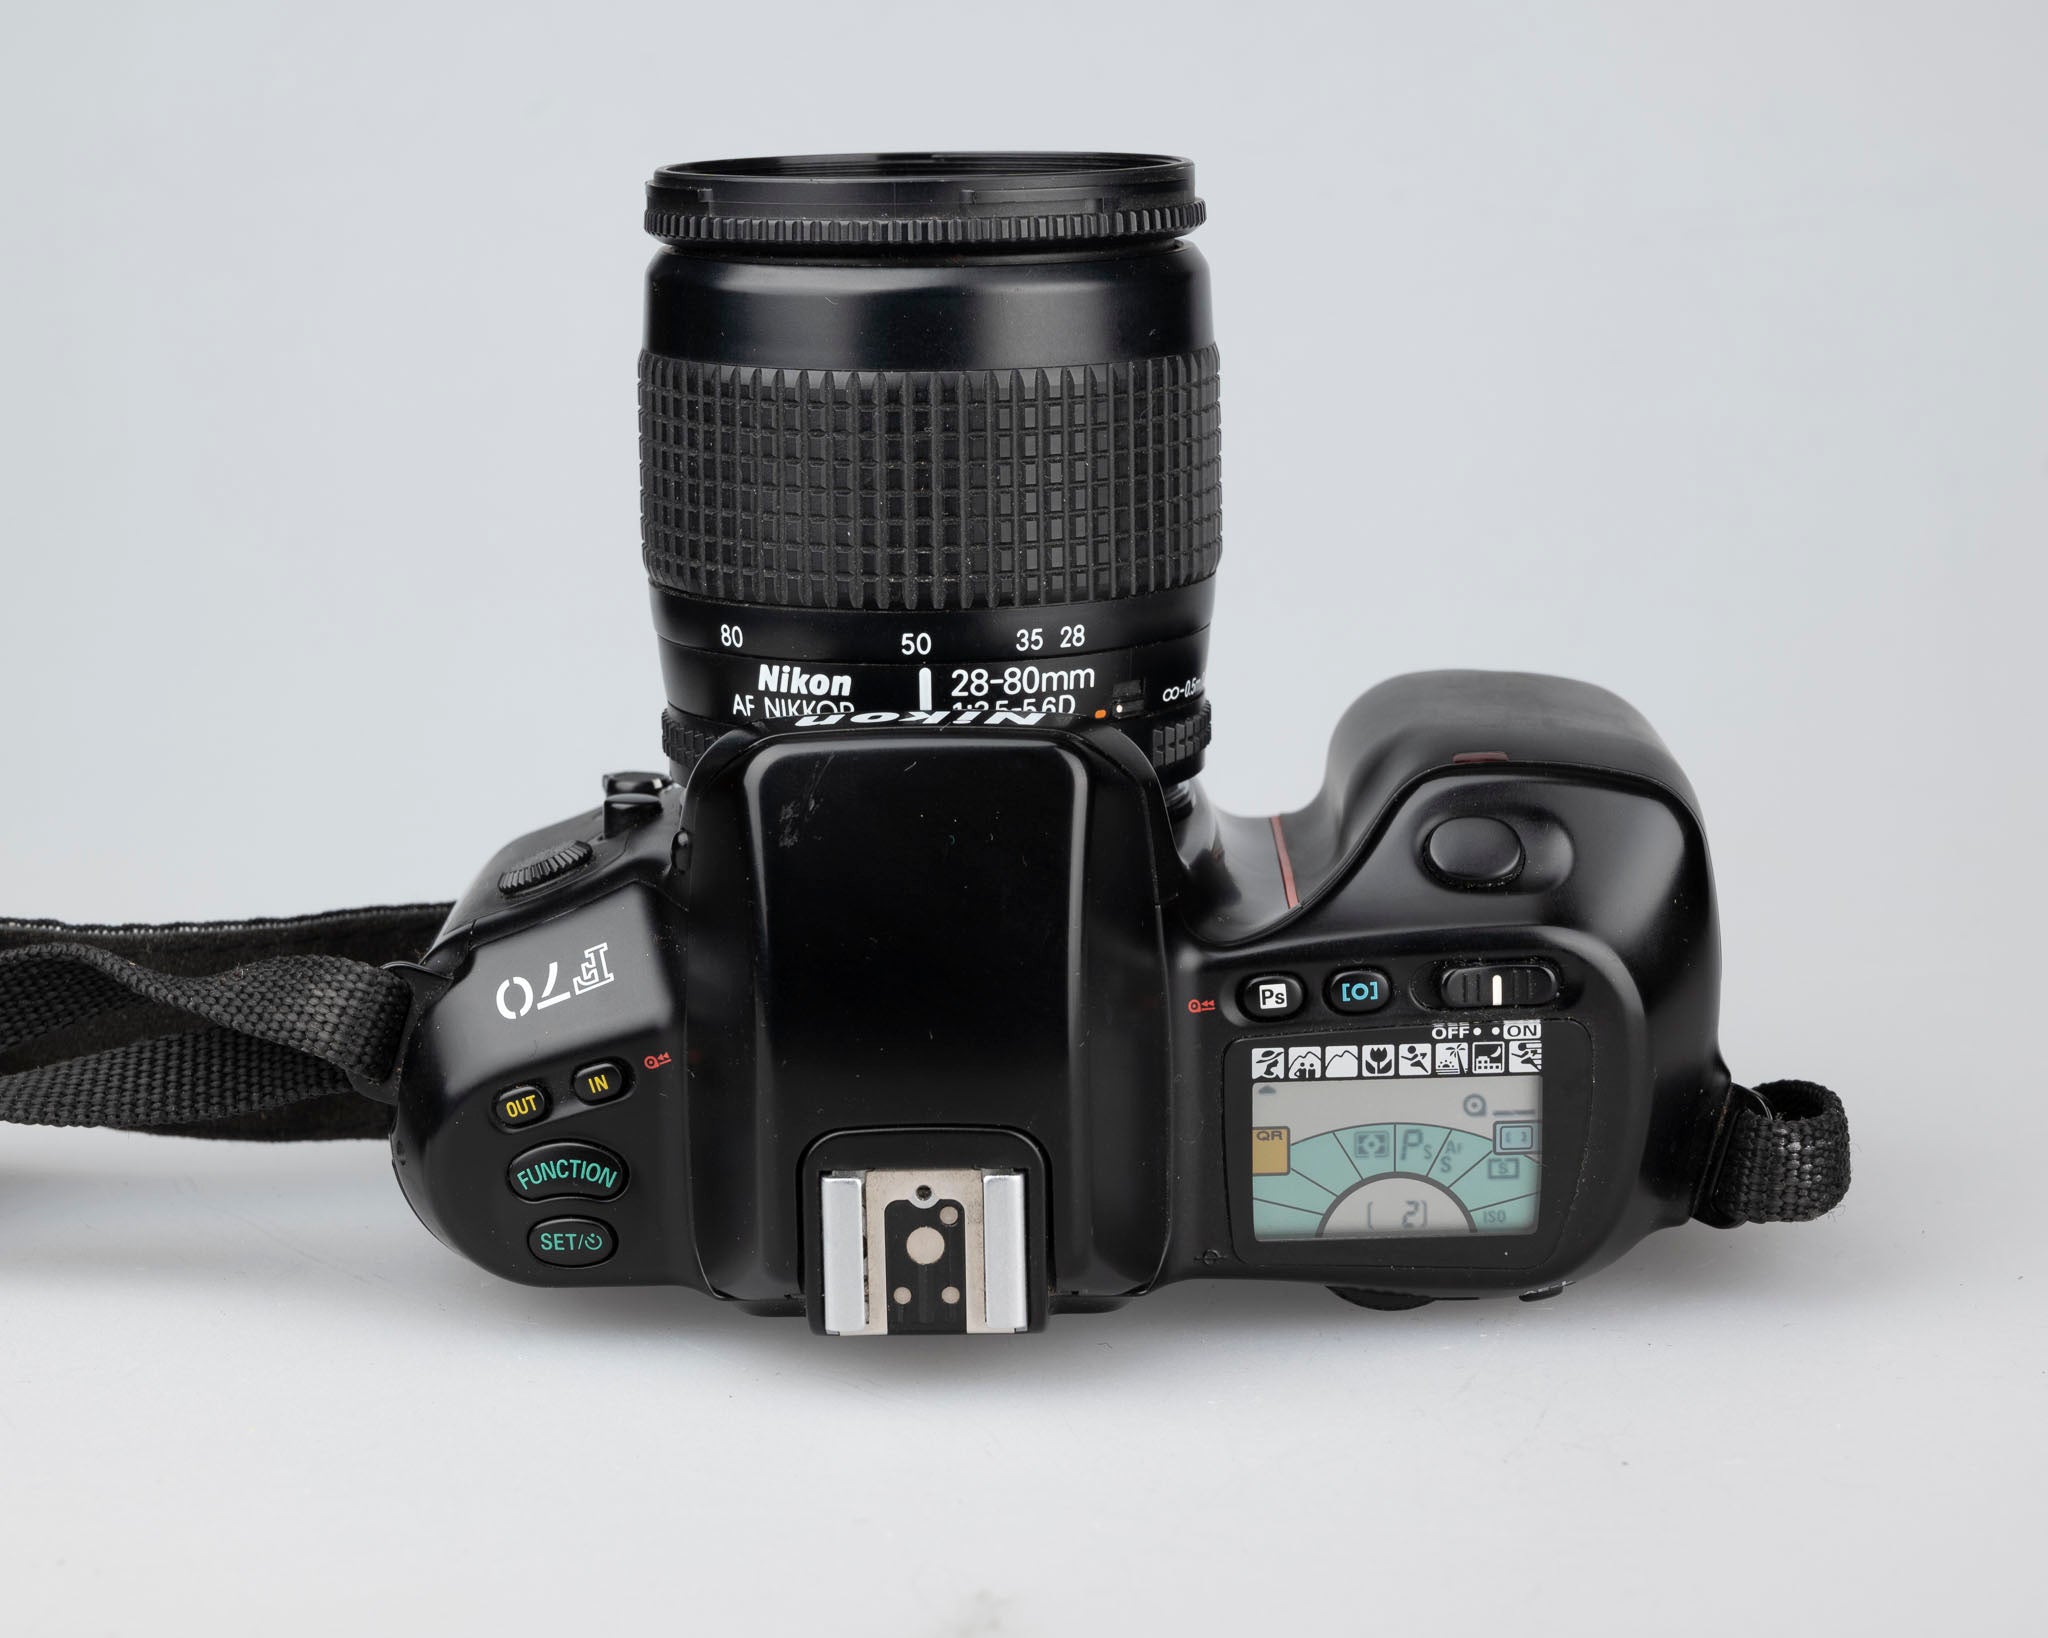 Nikon F70 35mm film SLR w/ AF Nikkor 28-80mm 3.5-5.6D lens – New Wave Pool